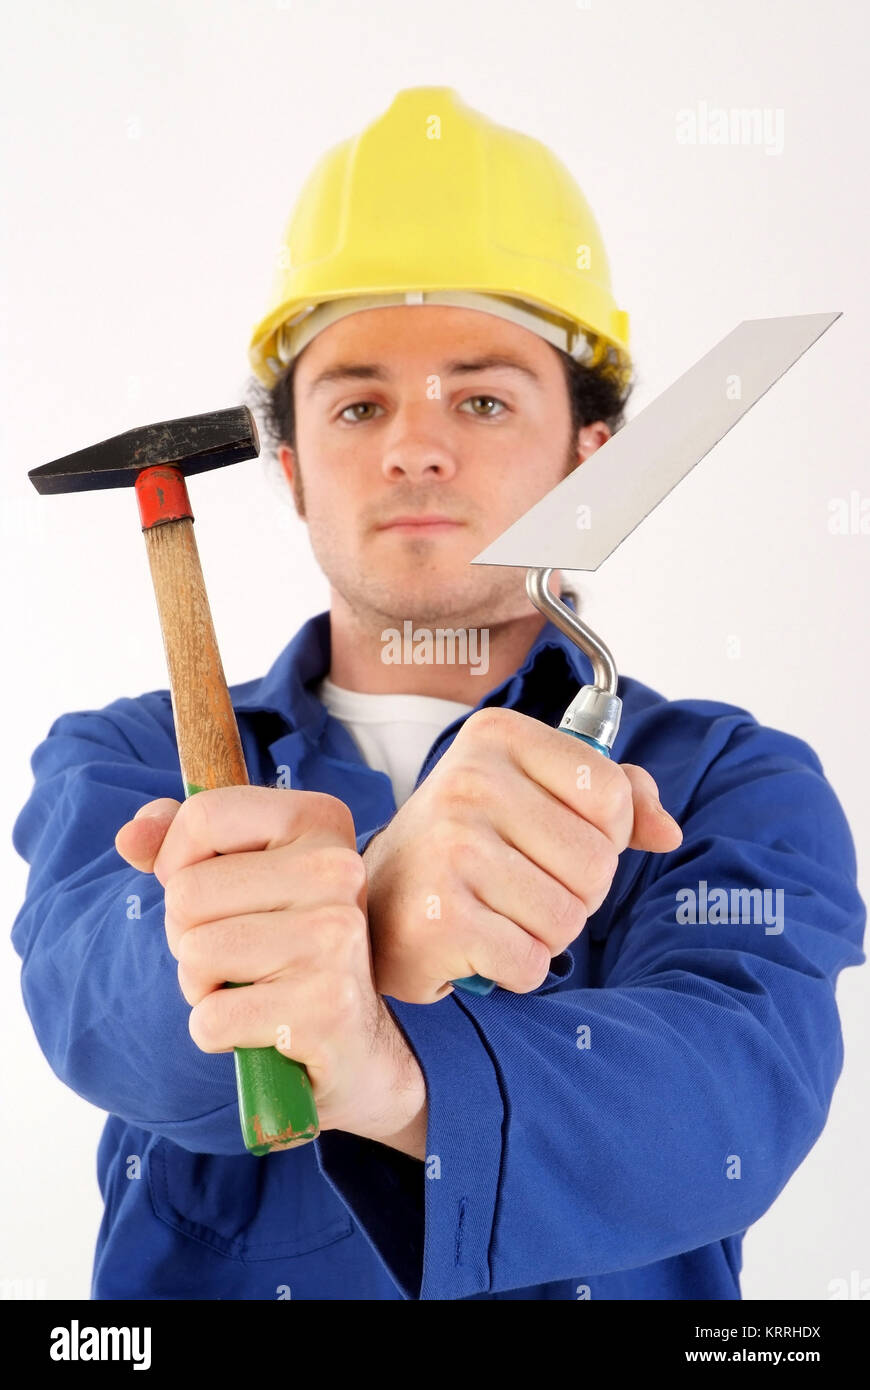 Bauarbeiter mit Blaumann, Bauhelm und Werkzeug - building worker with tools Stock Photo